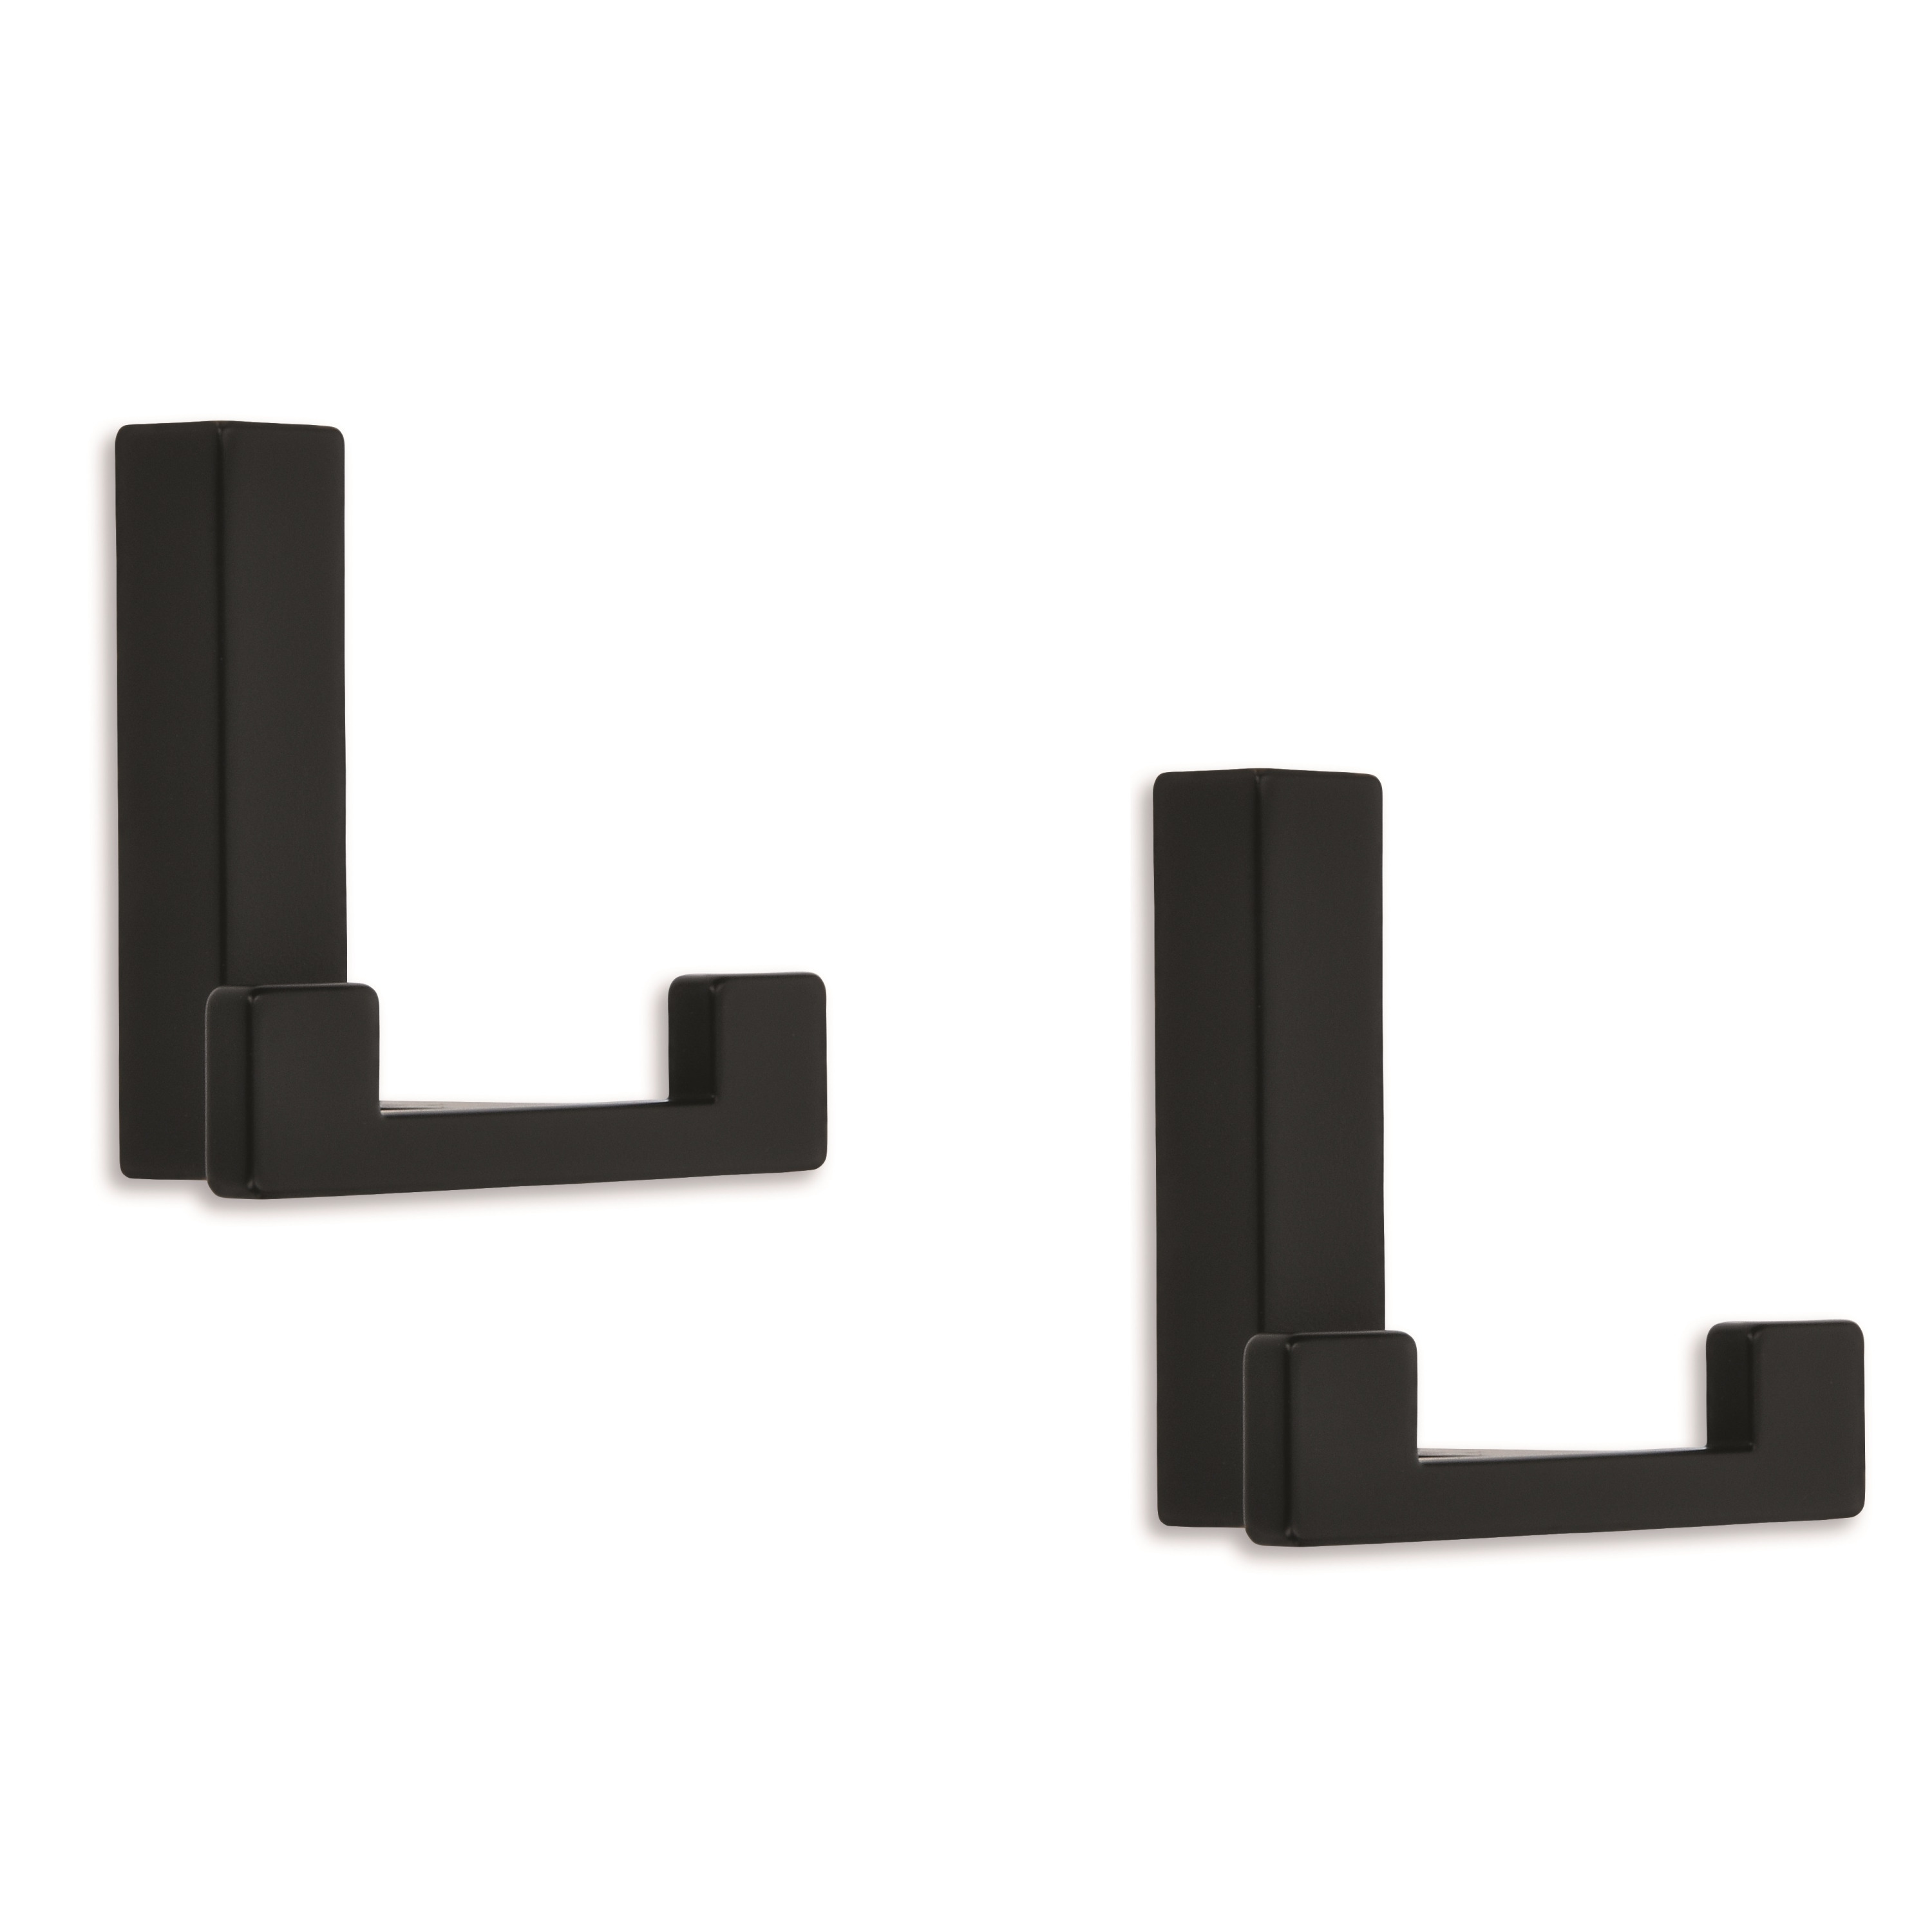 10x Luxe kapstokhaken-jashaken-kapstokhaakjes metaal modern zwart dubbele haak 4 x 6,1 cm